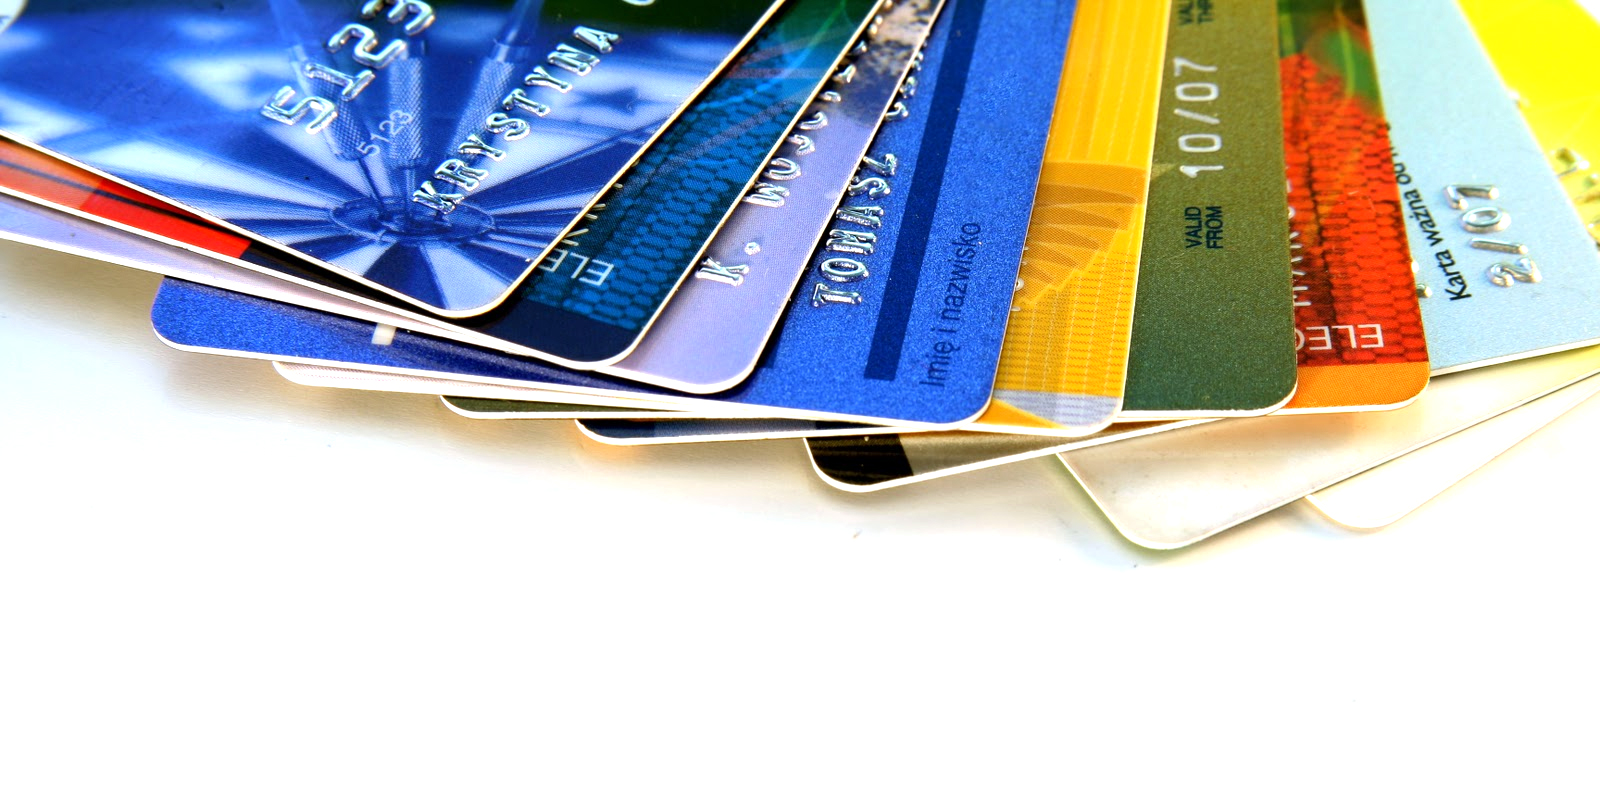 Cartões de crédito. Cuidados a ter para não cair numa situação de sobreendividamento